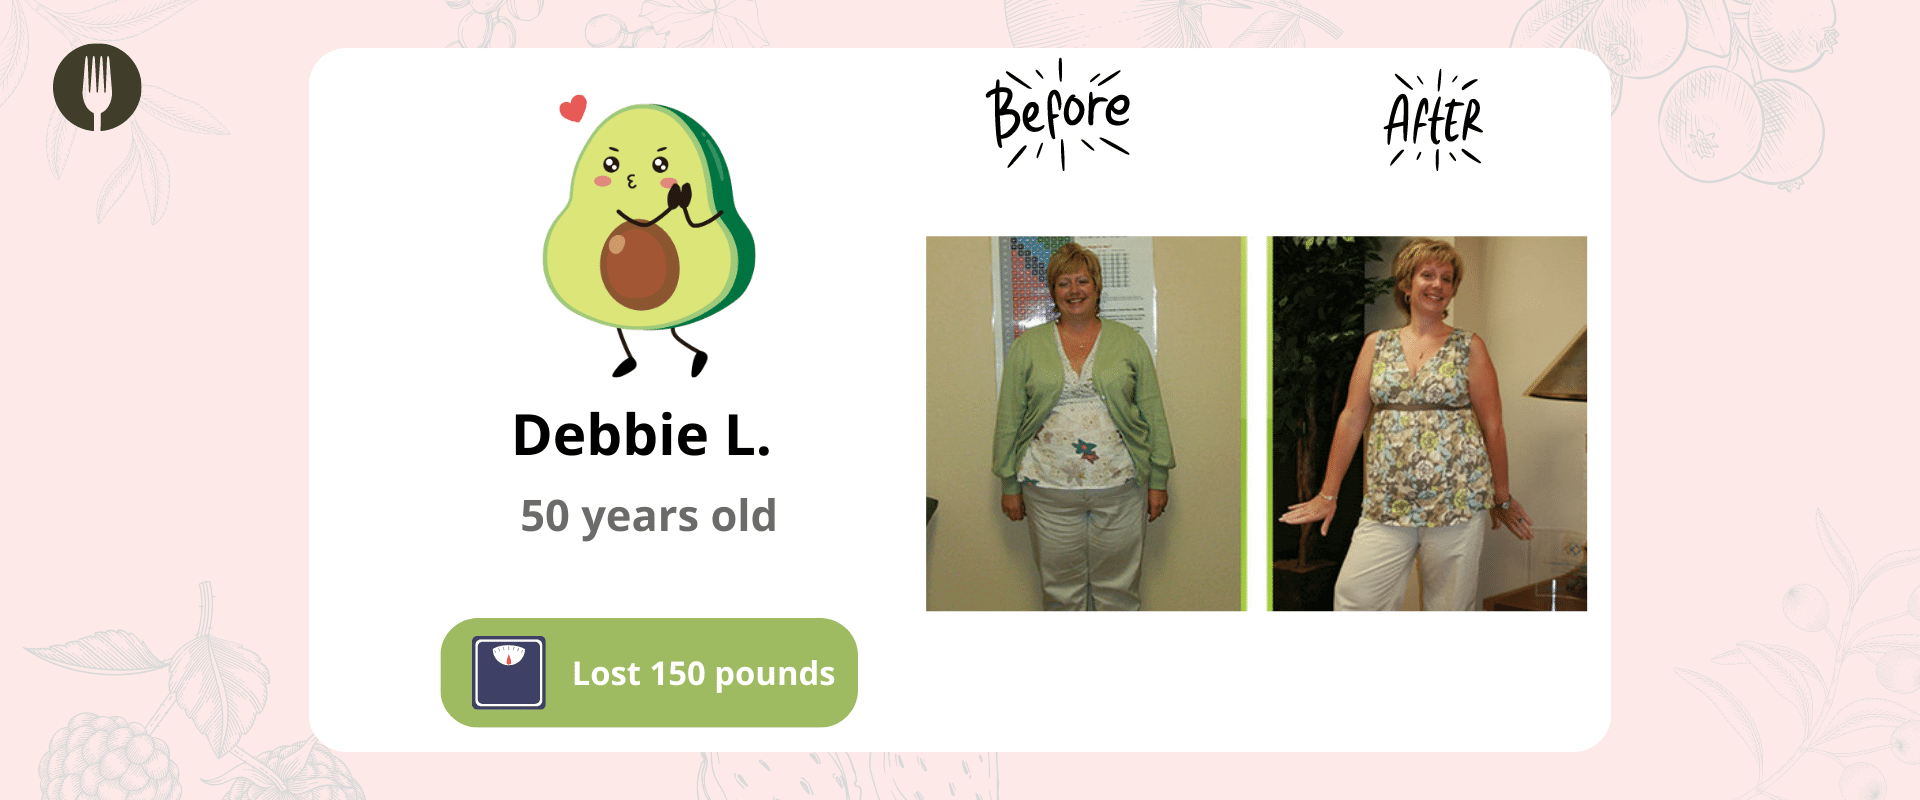 Success Story #4: Debbie L. 